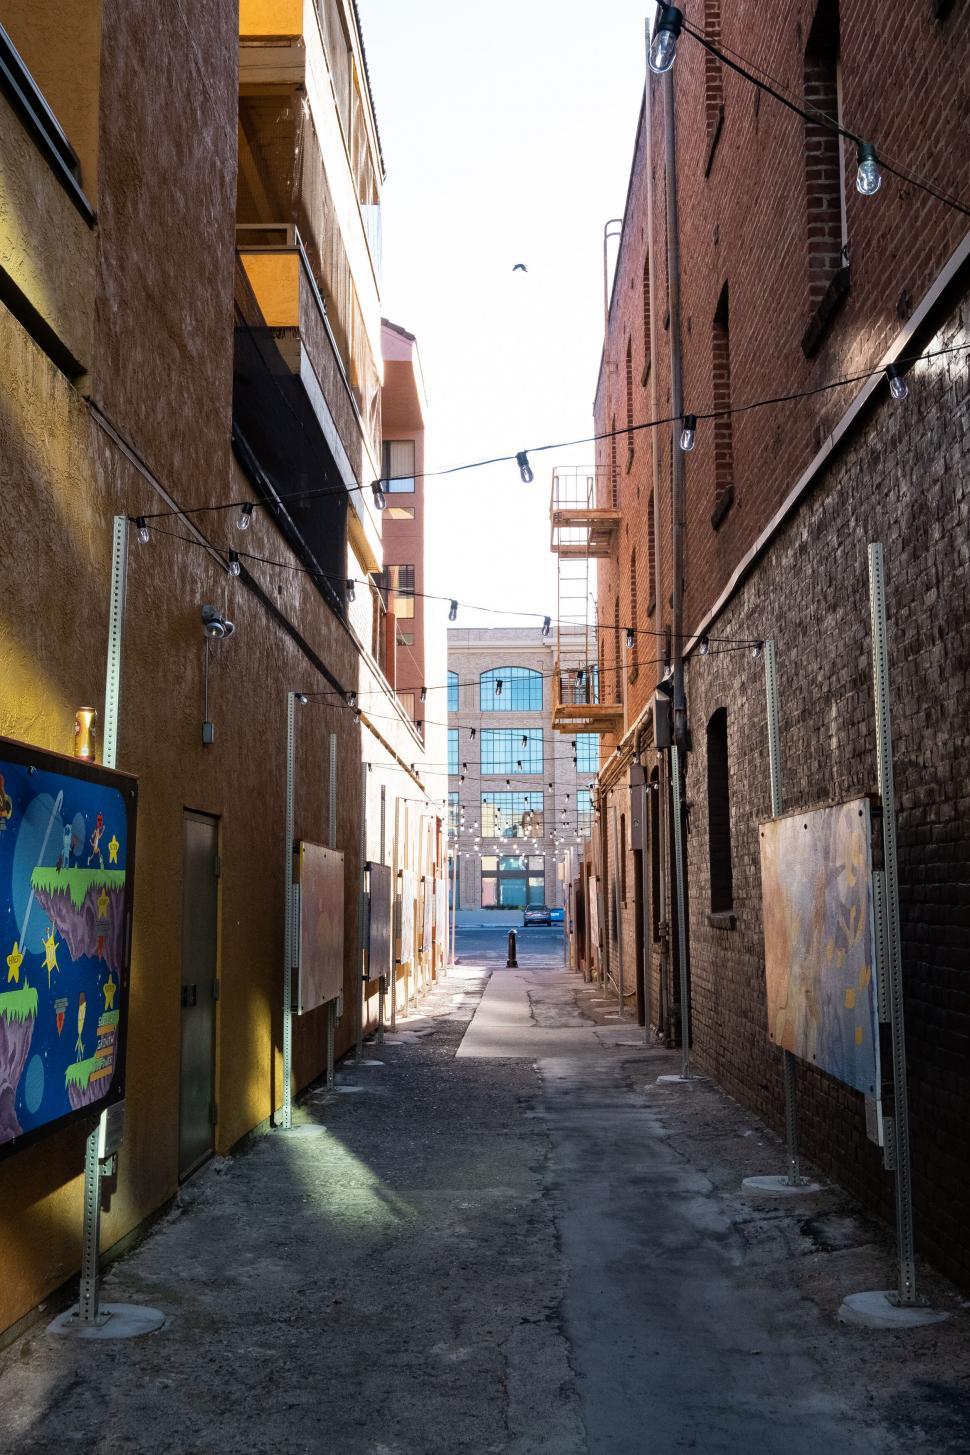 Free Image of Alleyway between brick buildings 